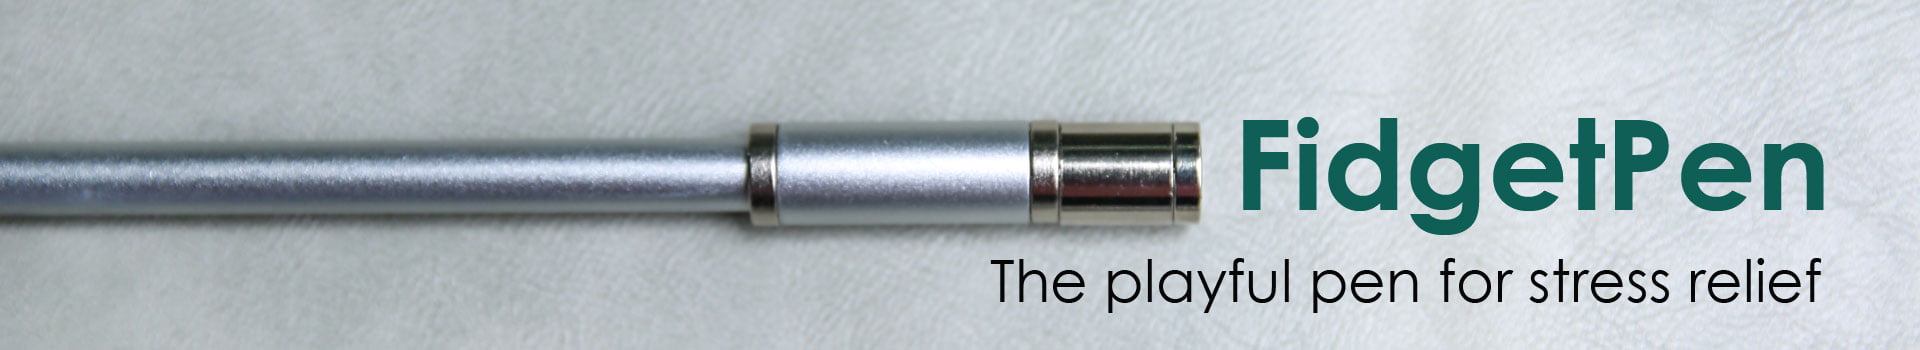 Αντιστρές στυλό FidgetPen της Allocacoc σε χρώμα ασημί με μελάνι που διαγράφεται. geekers.gr